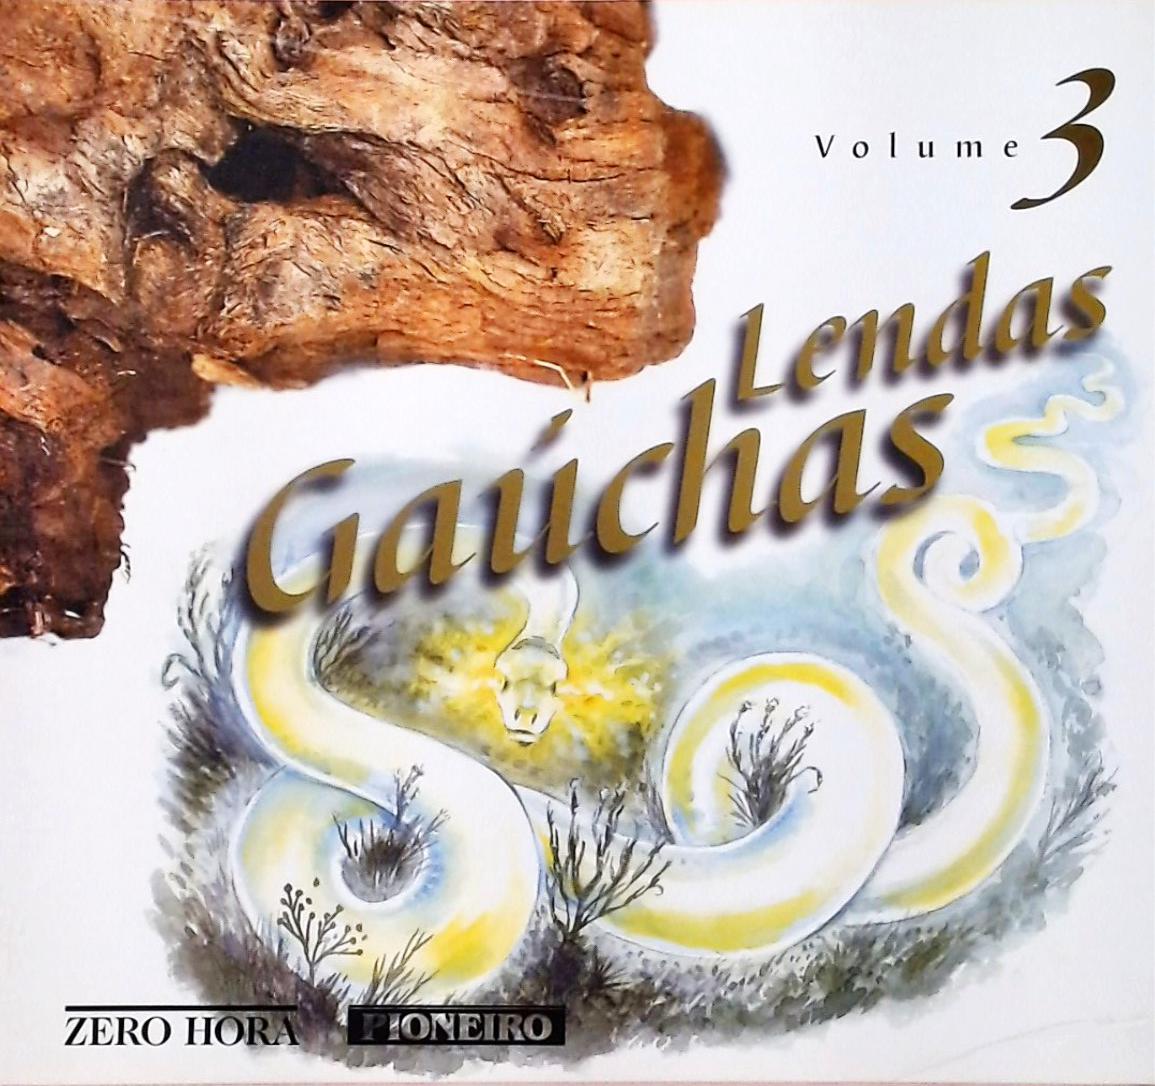 Lendas Gaúchas Volume 3